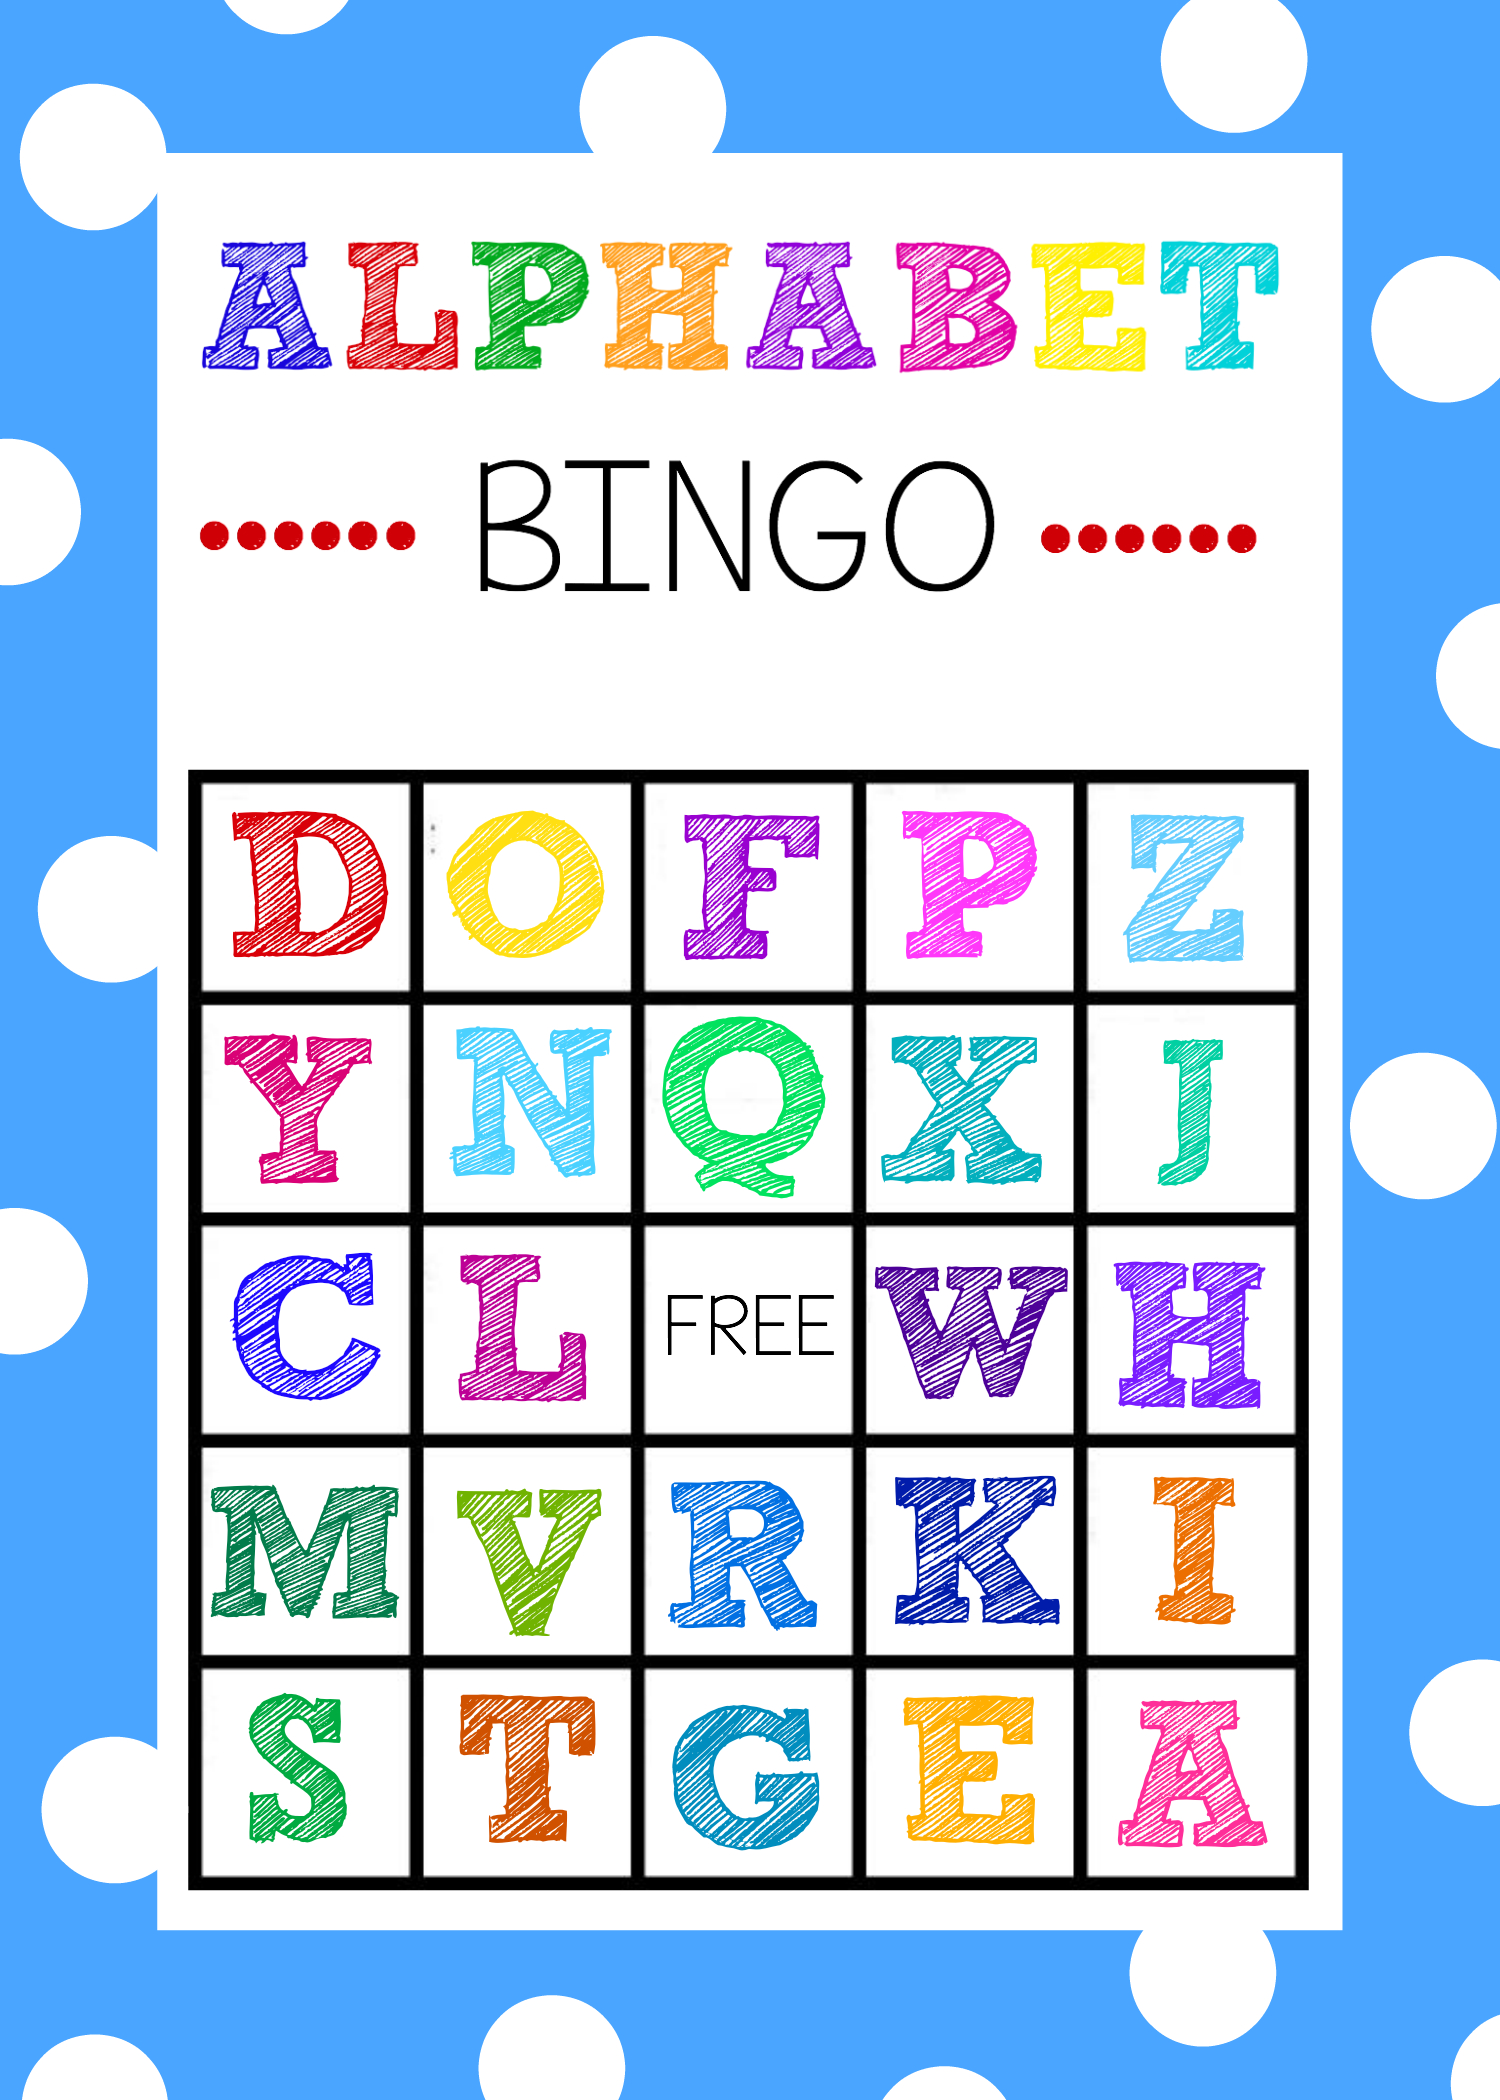 Free Printable Alphabet Bingo Game | Abc Games | Pinterest - Free Printable Alphabet Games